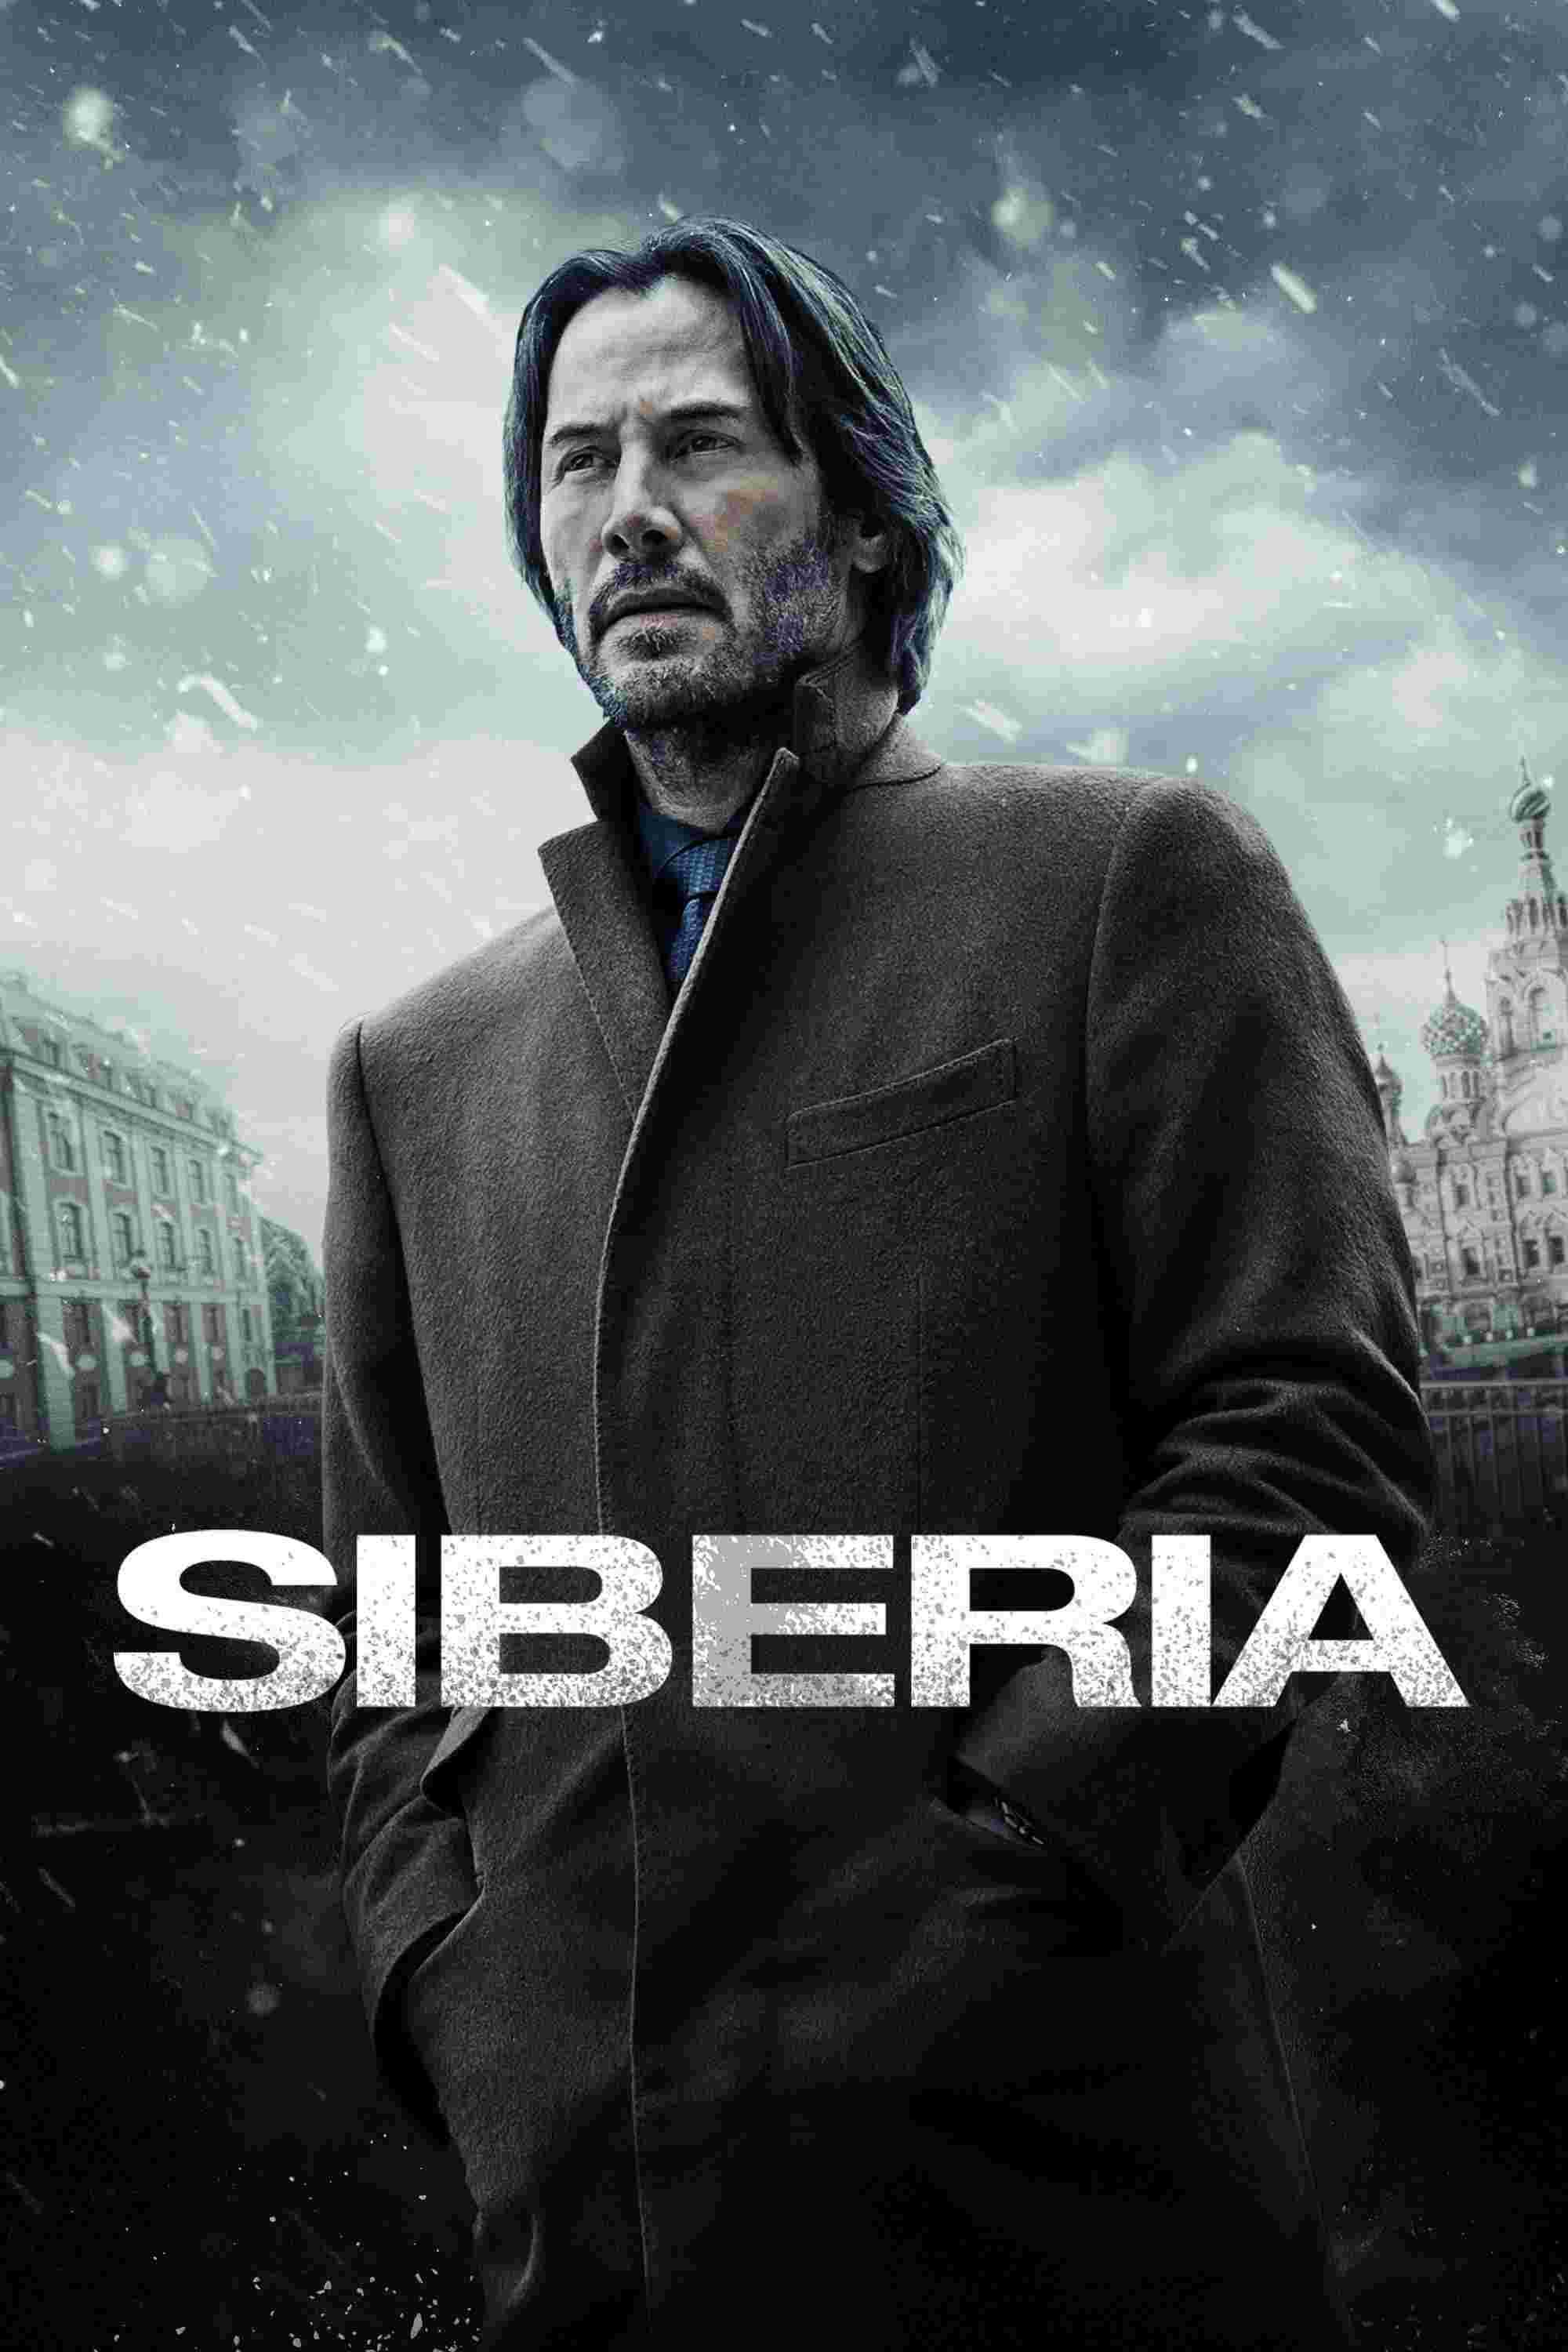 Siberia (2018) Keanu Reeves